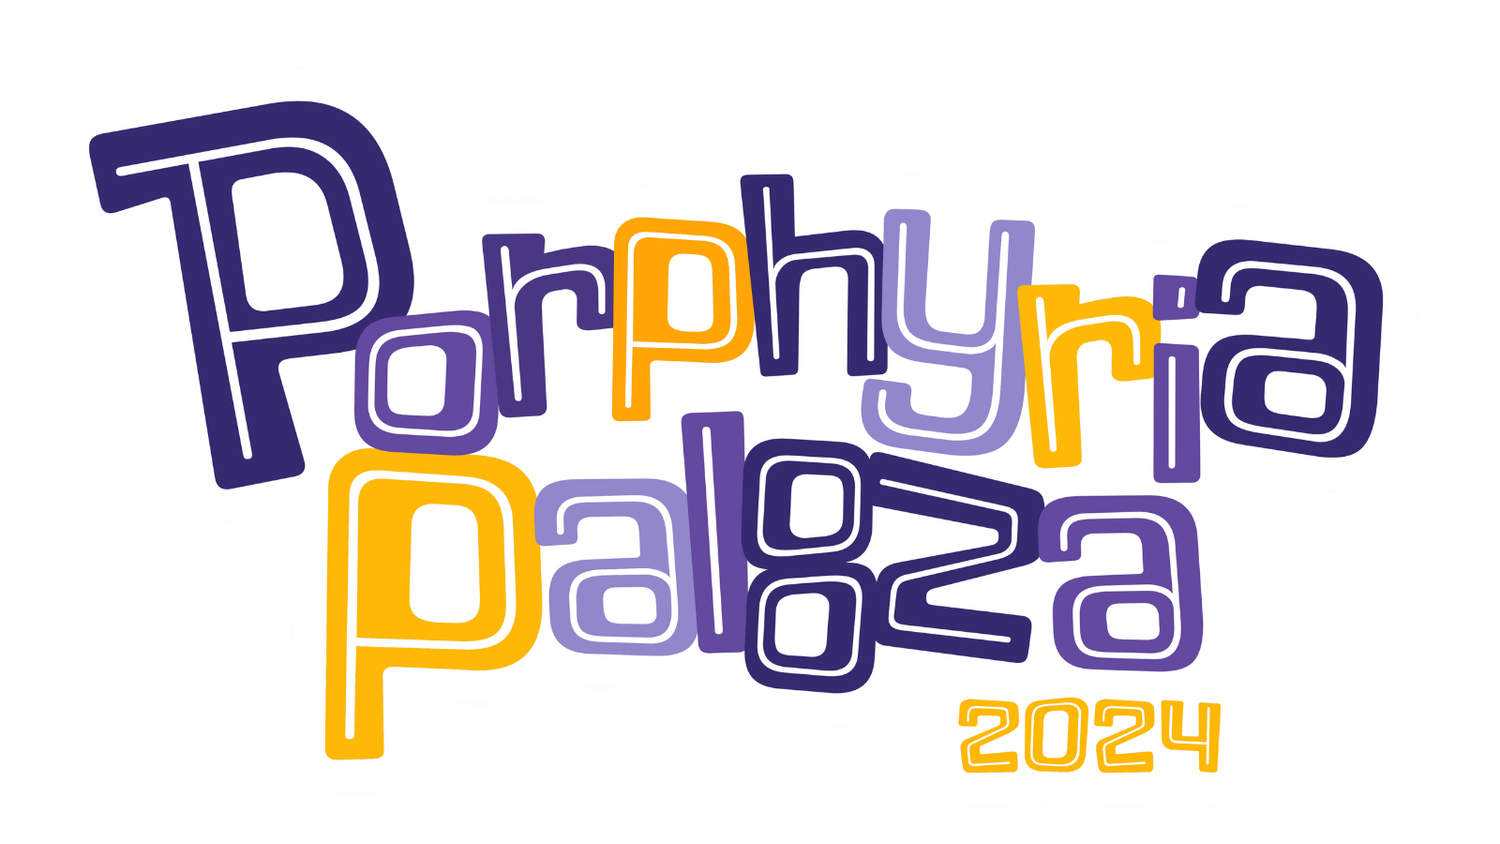 Porphyriapalooza